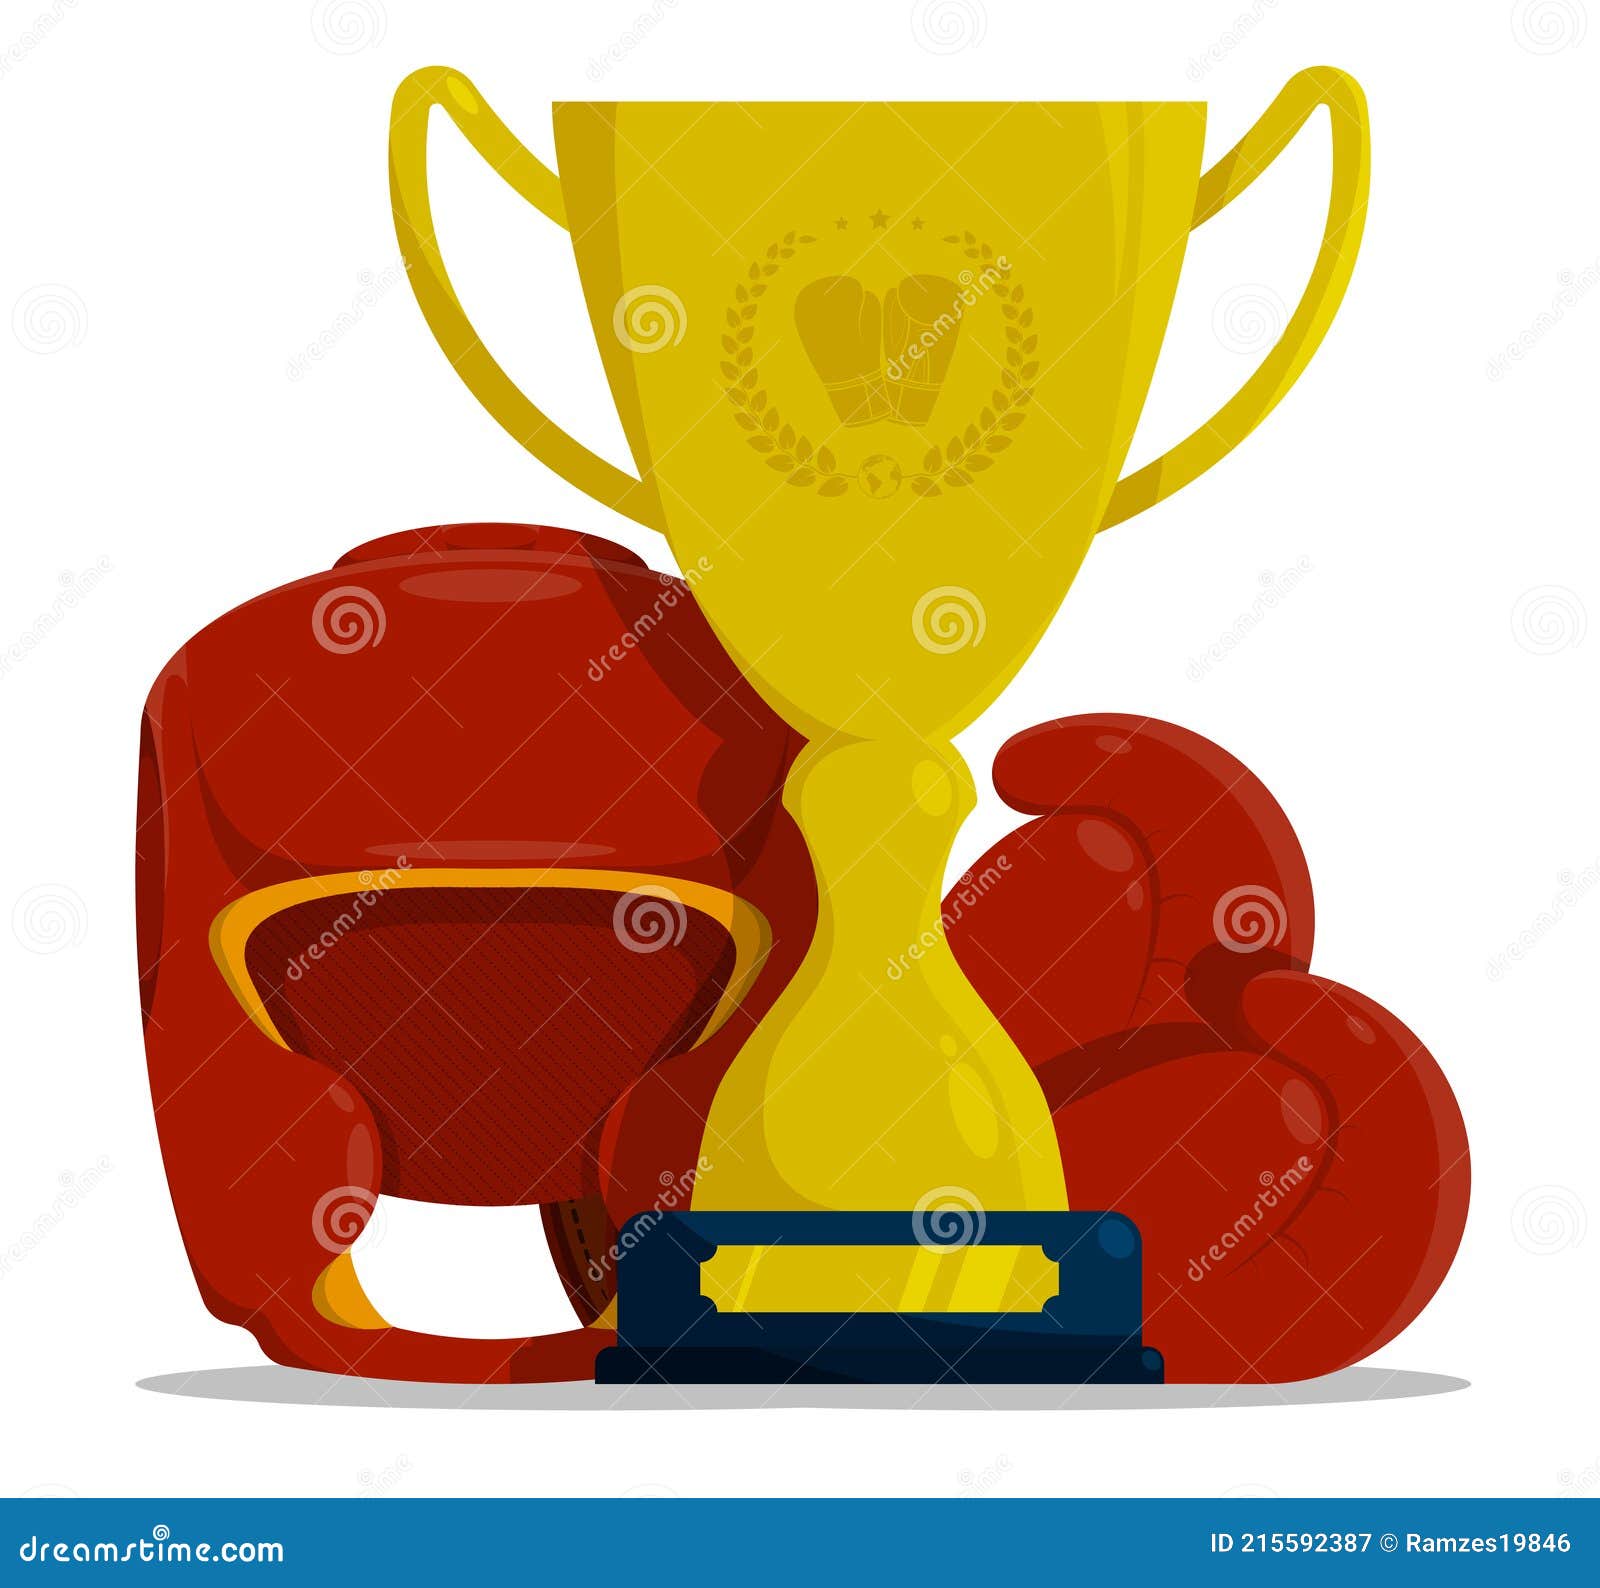 DYYPPWW Premios Deportivos FúTbol Copa Trofeo De CompeticióN,Competencia De Artes Marciales Trofeo De Boxeo,Fan Memorabilia,Oro